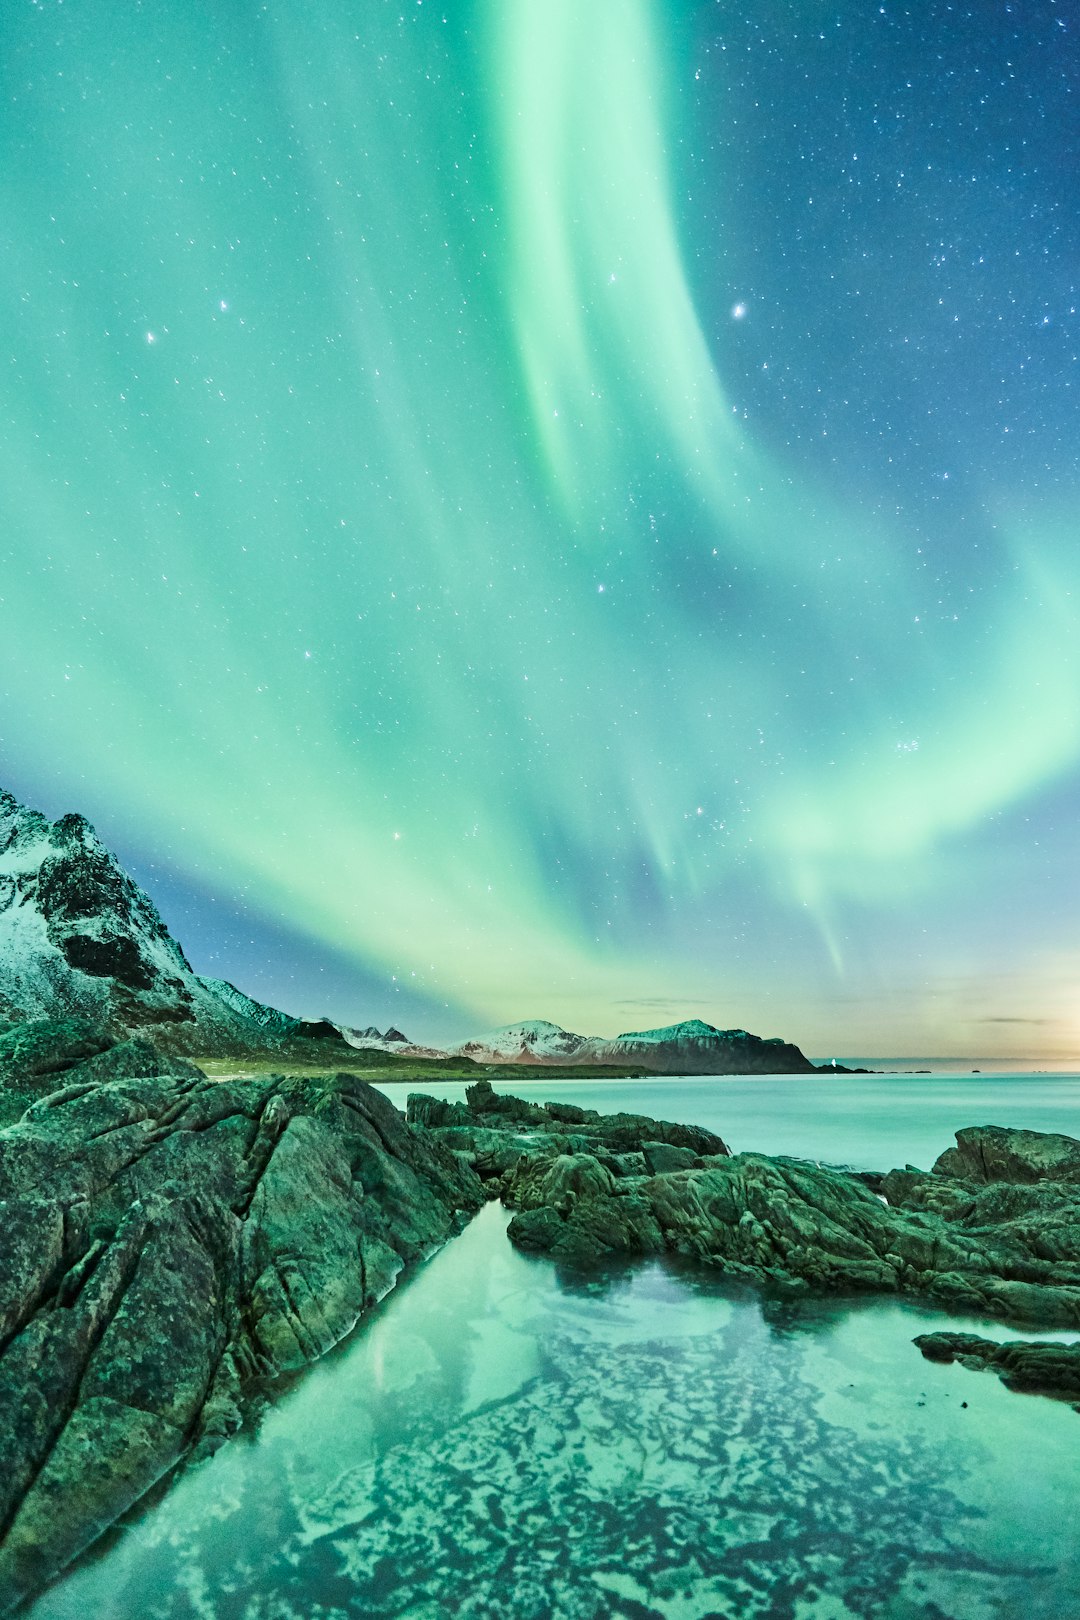 travelers stories about Ocean in Lofoten Islands, Norway